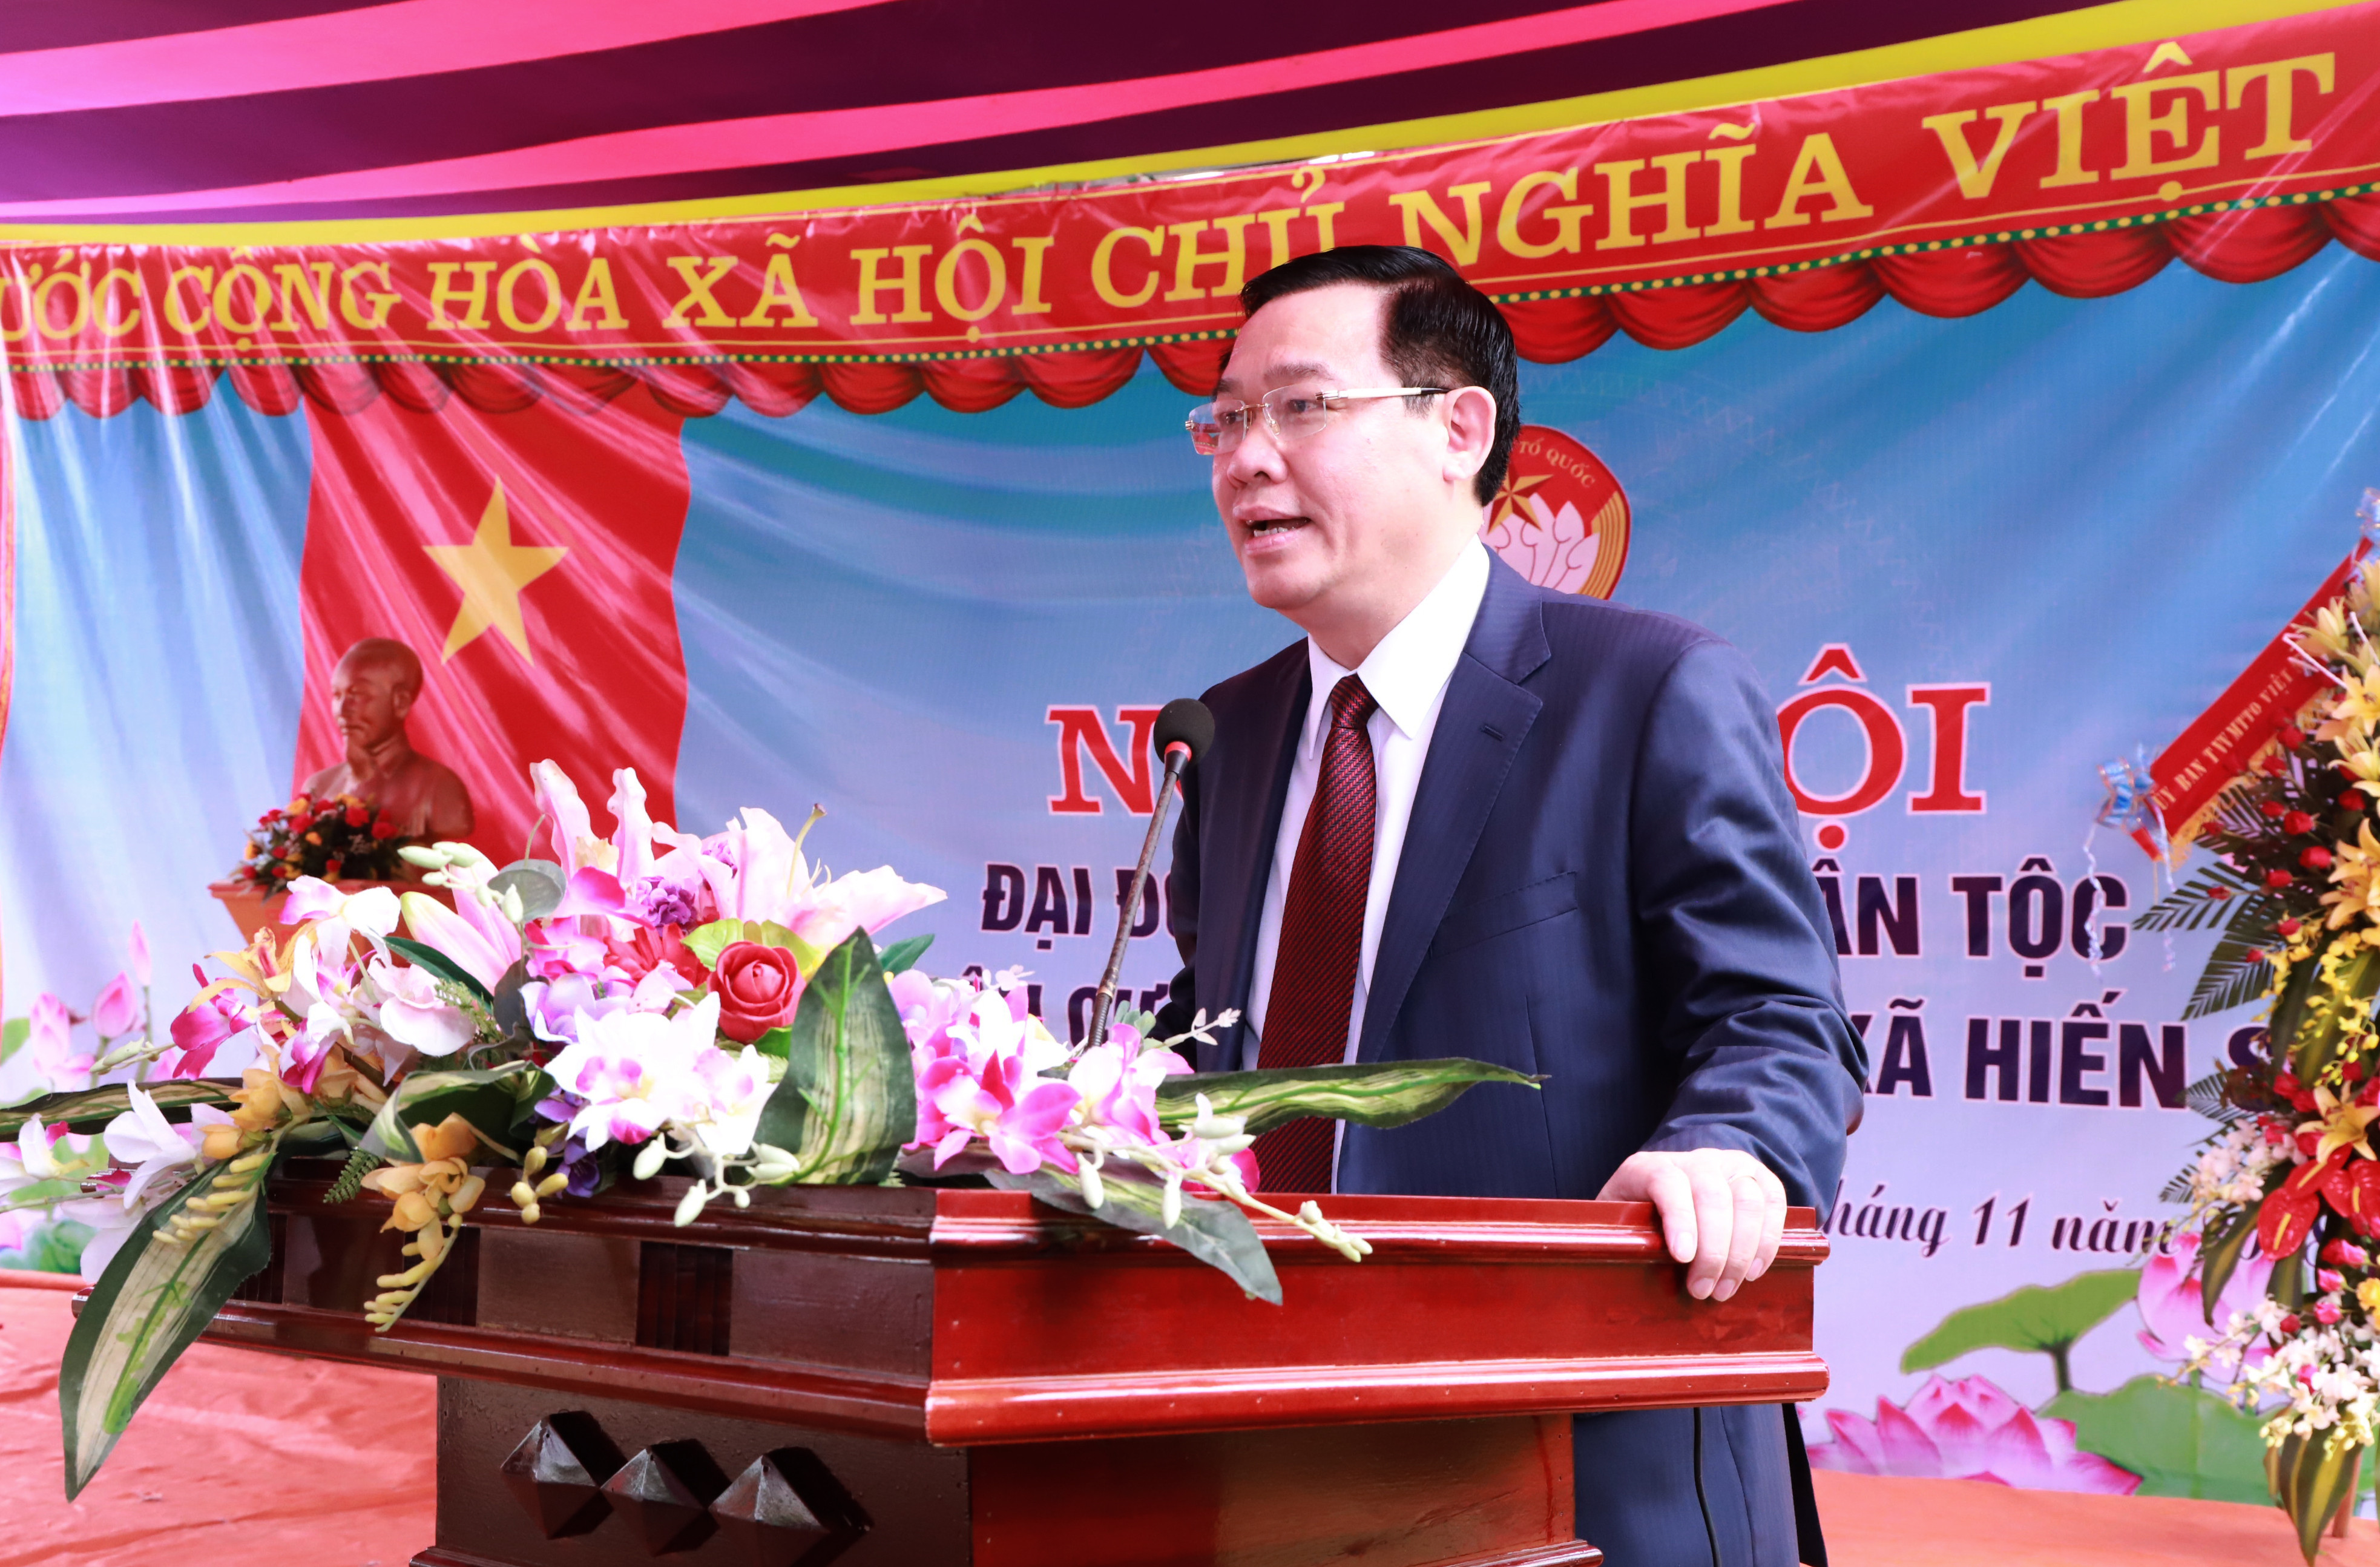 Phó Thủ tướng Vương Đình Huệ nói chuyện với cán bộ và nhân dân địa phương. Ảnh: Thành Duy